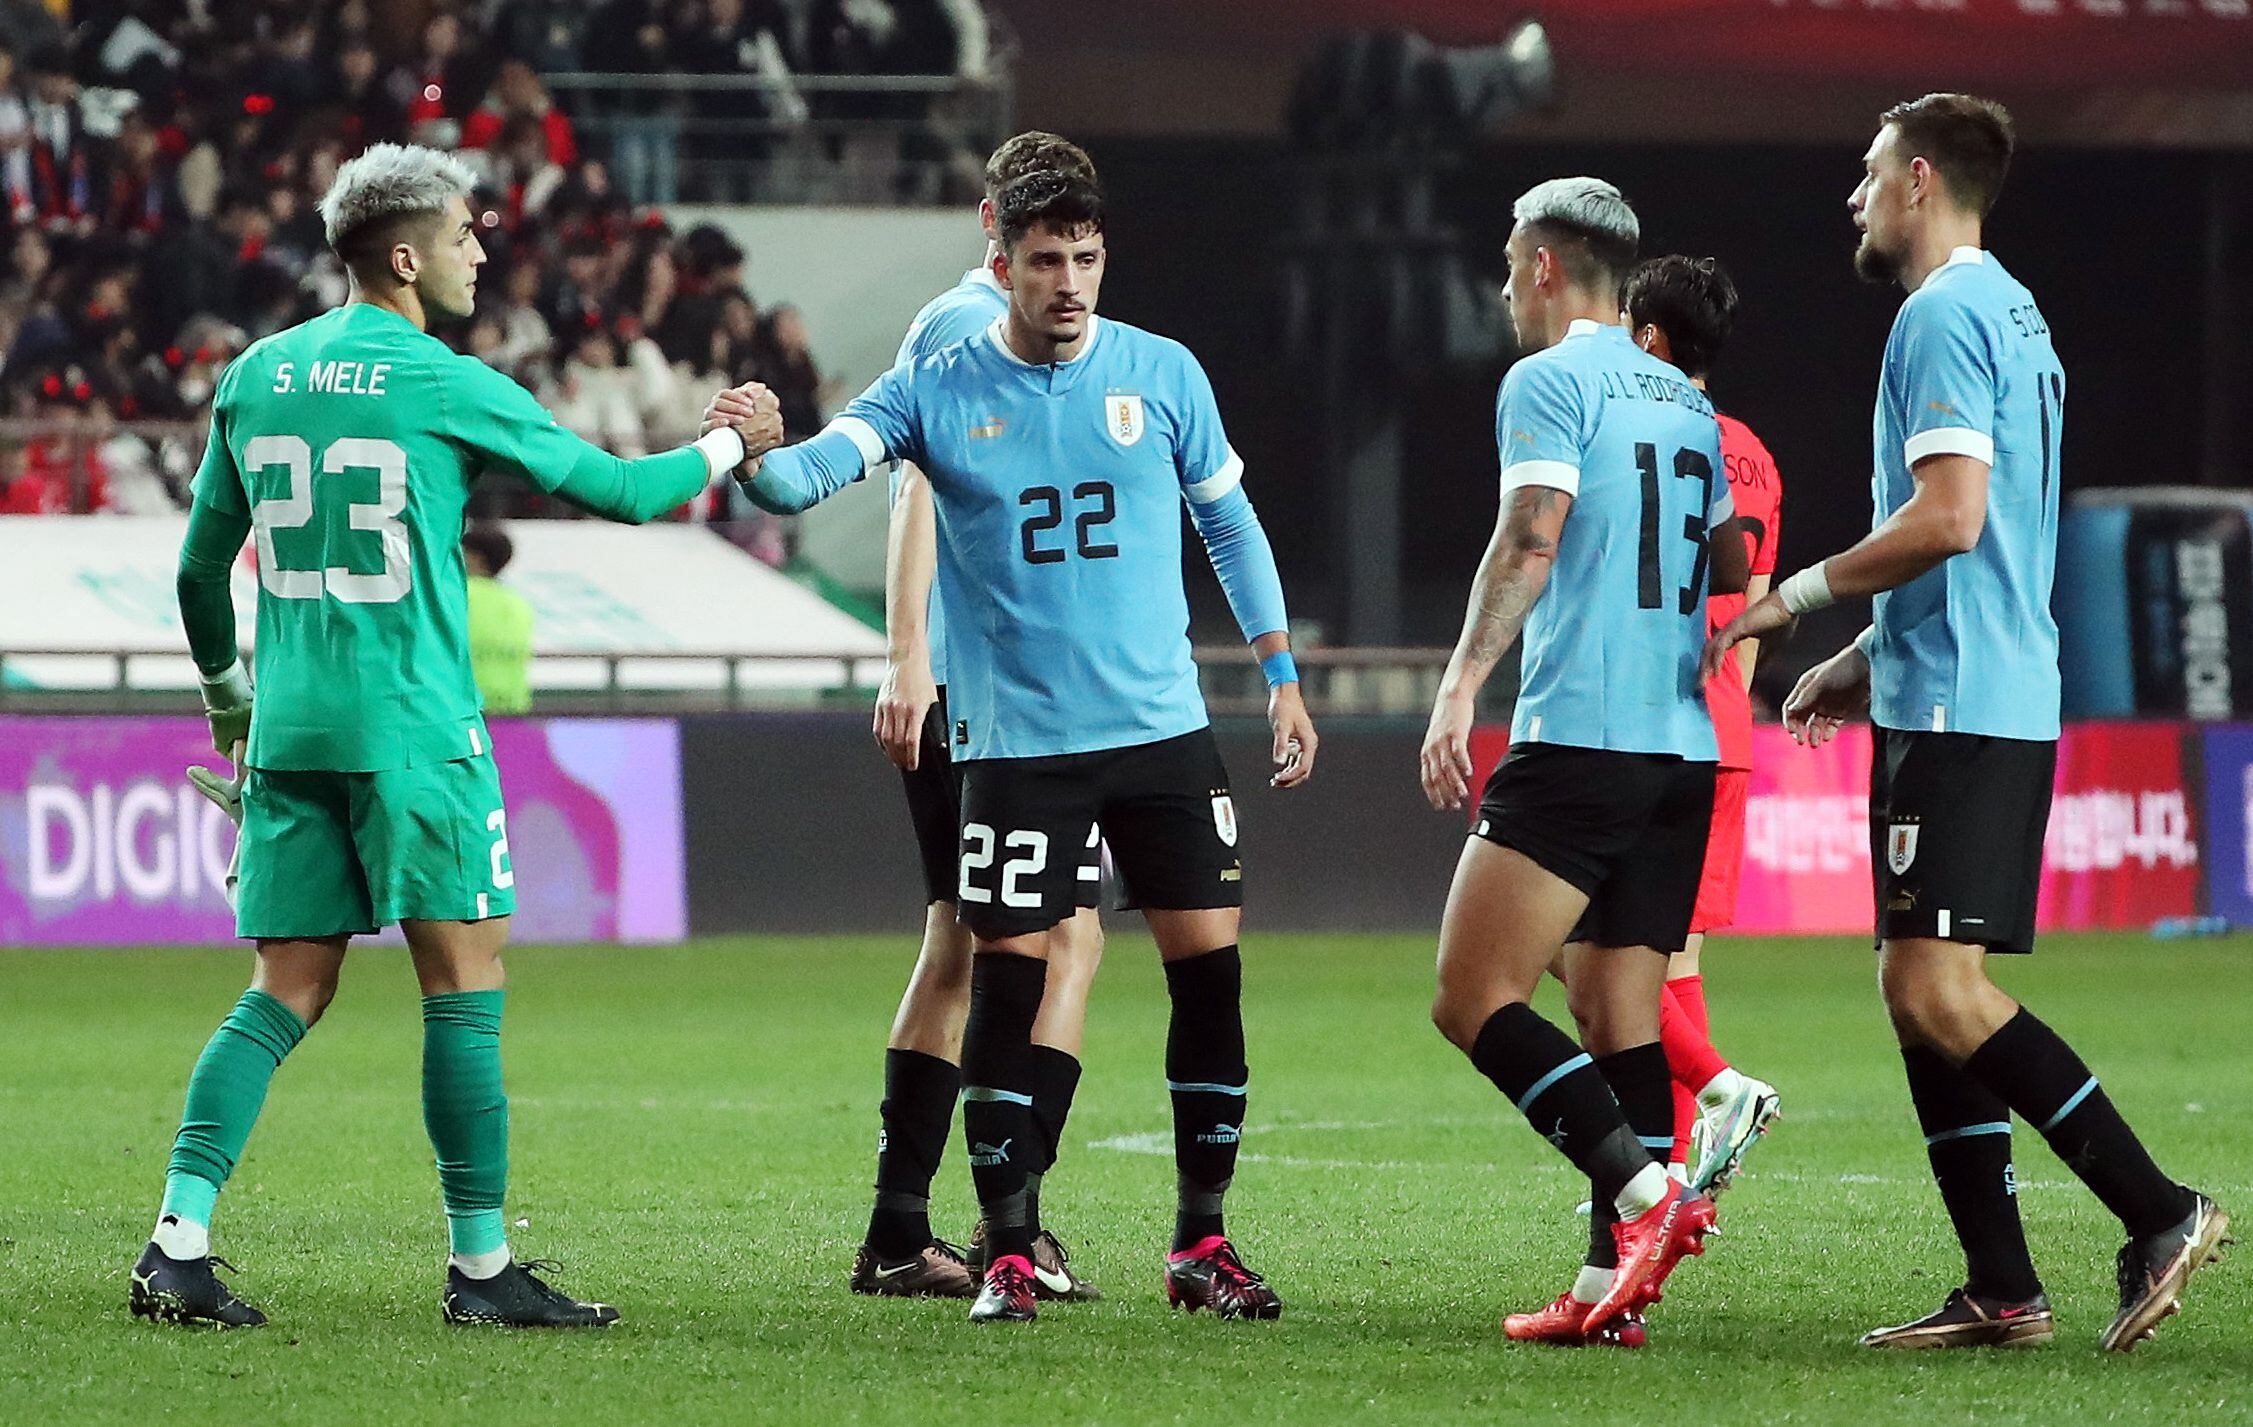 Santiago Mele tapando para la selección de Uruguay durante un amistoso frente a Corea del Sur - crédito Kim Soo-Hyeon/REUTERS